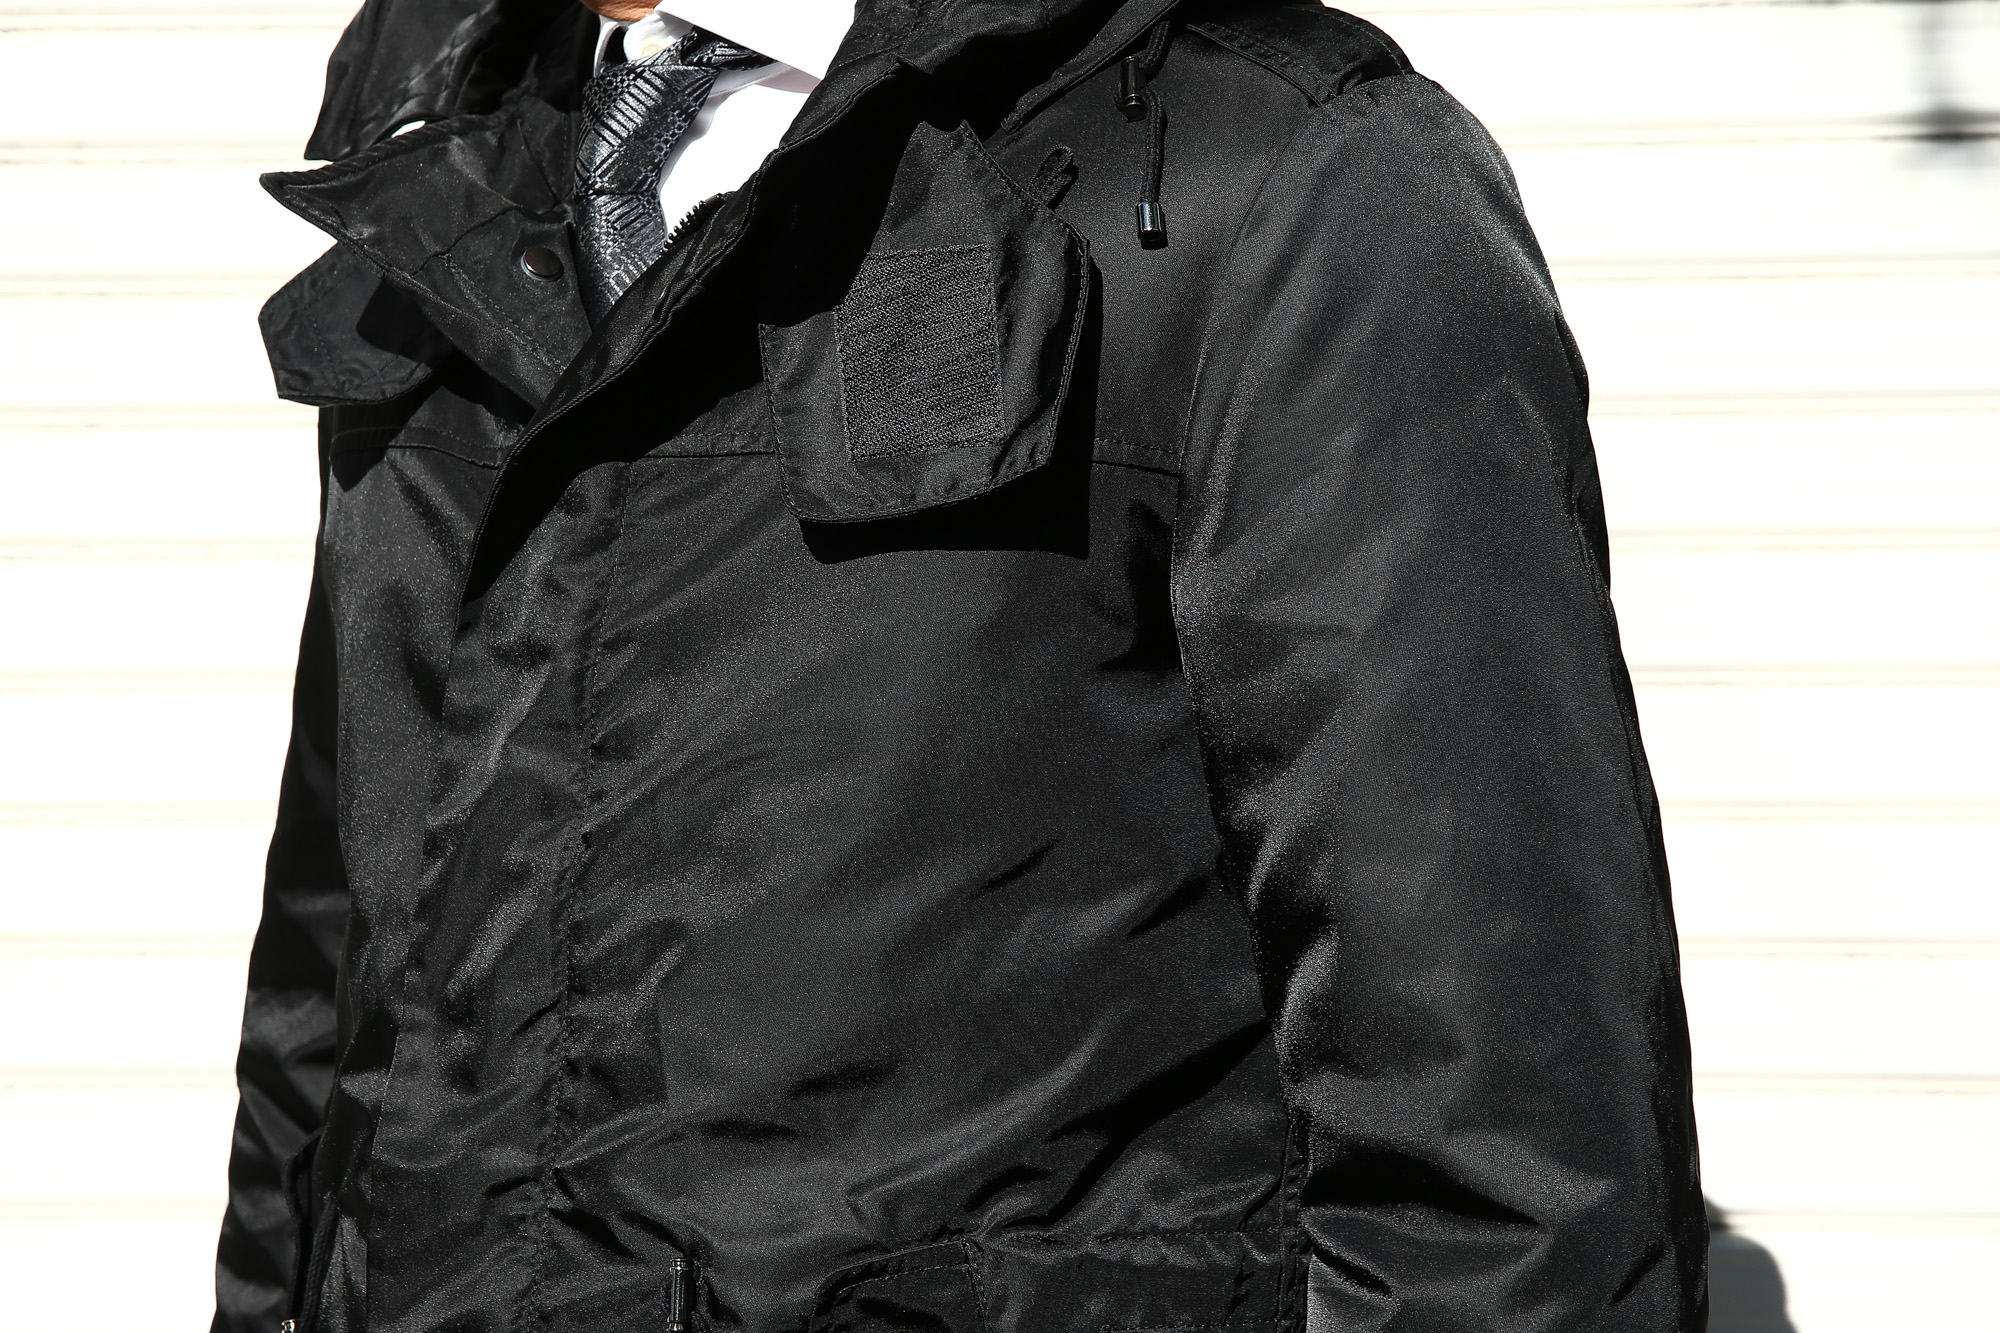 【Sealup / シーラップ】 M51 Mods coat (M51 モッズコート) サーモアライニング ダウンライナー付き モッズコート BLACK (ブラック・36) Made in italy (イタリア製) 2017 秋冬新作 sealup シーラップ 愛知 名古屋 Alto e Diritto アルト エ デリット